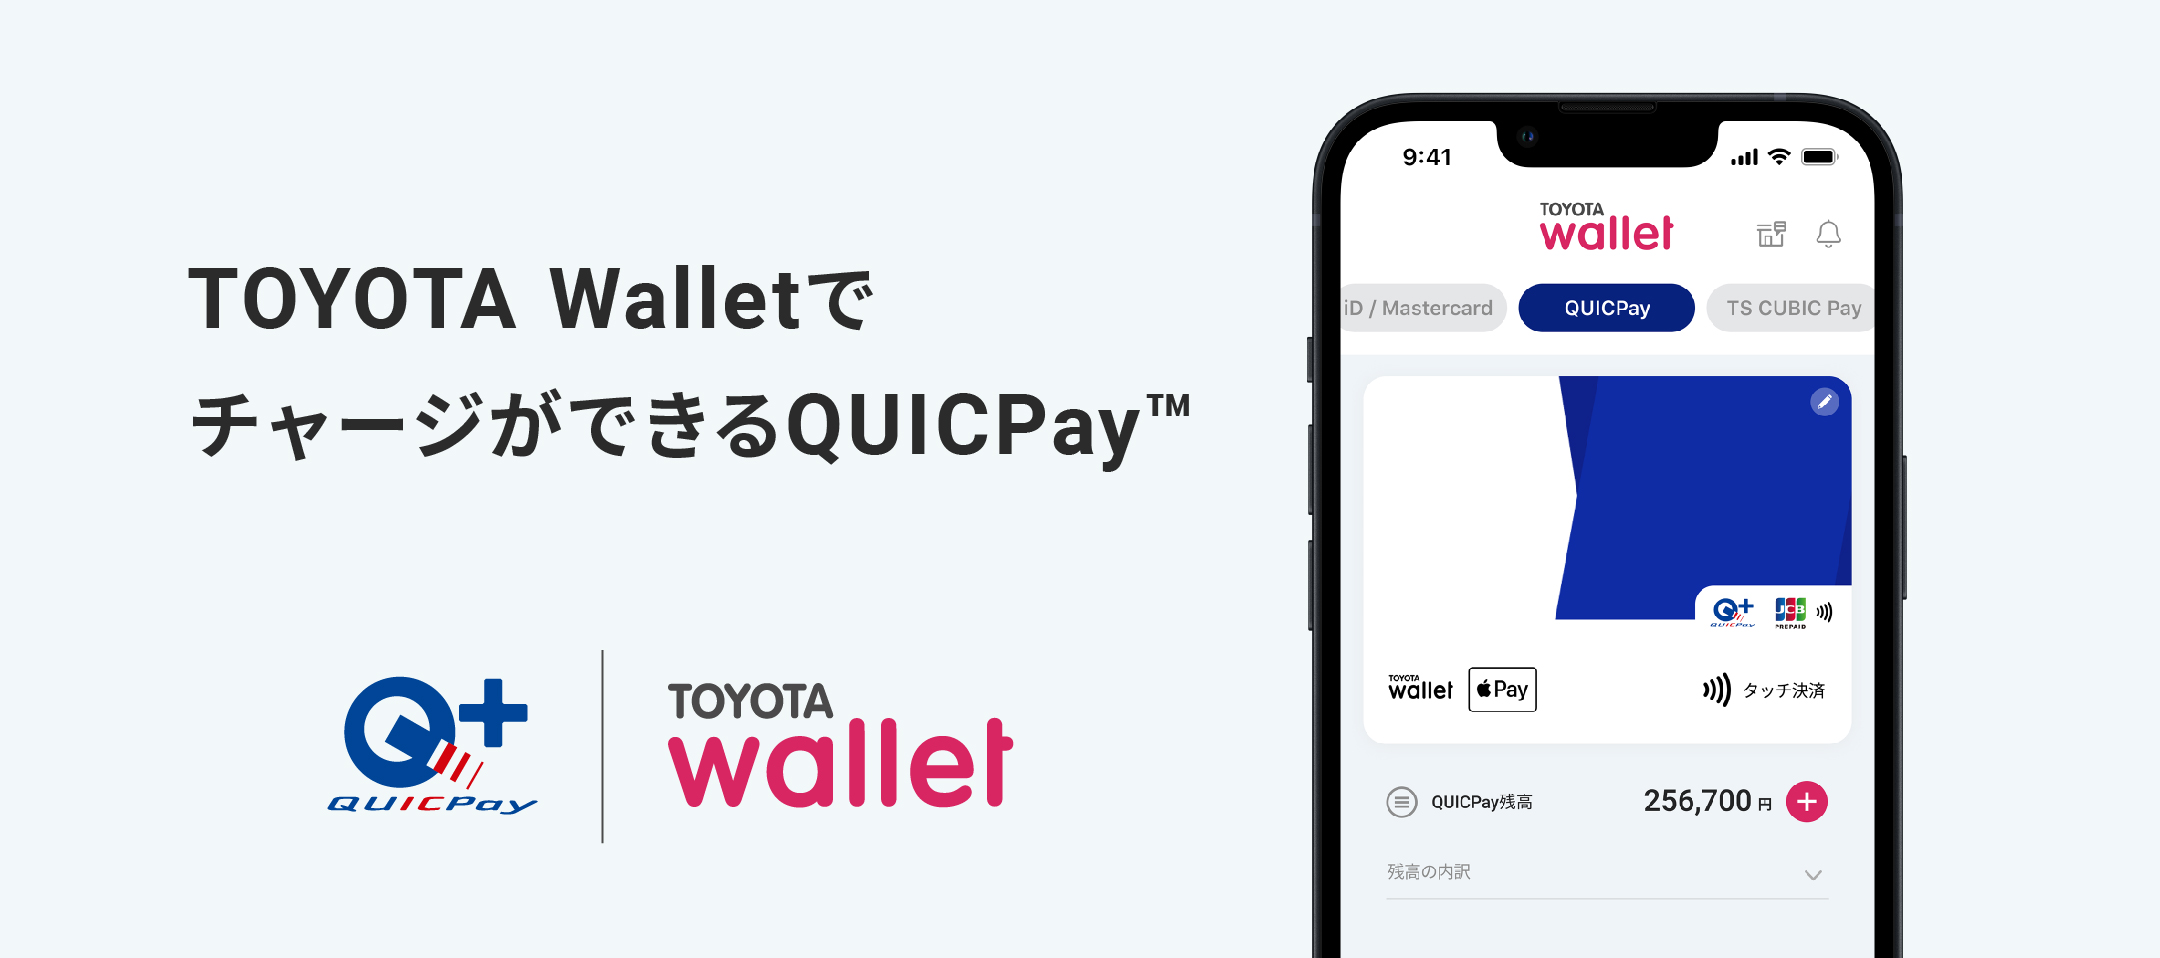 トヨタのスマホ決済アプリ TOYOTA Wallet